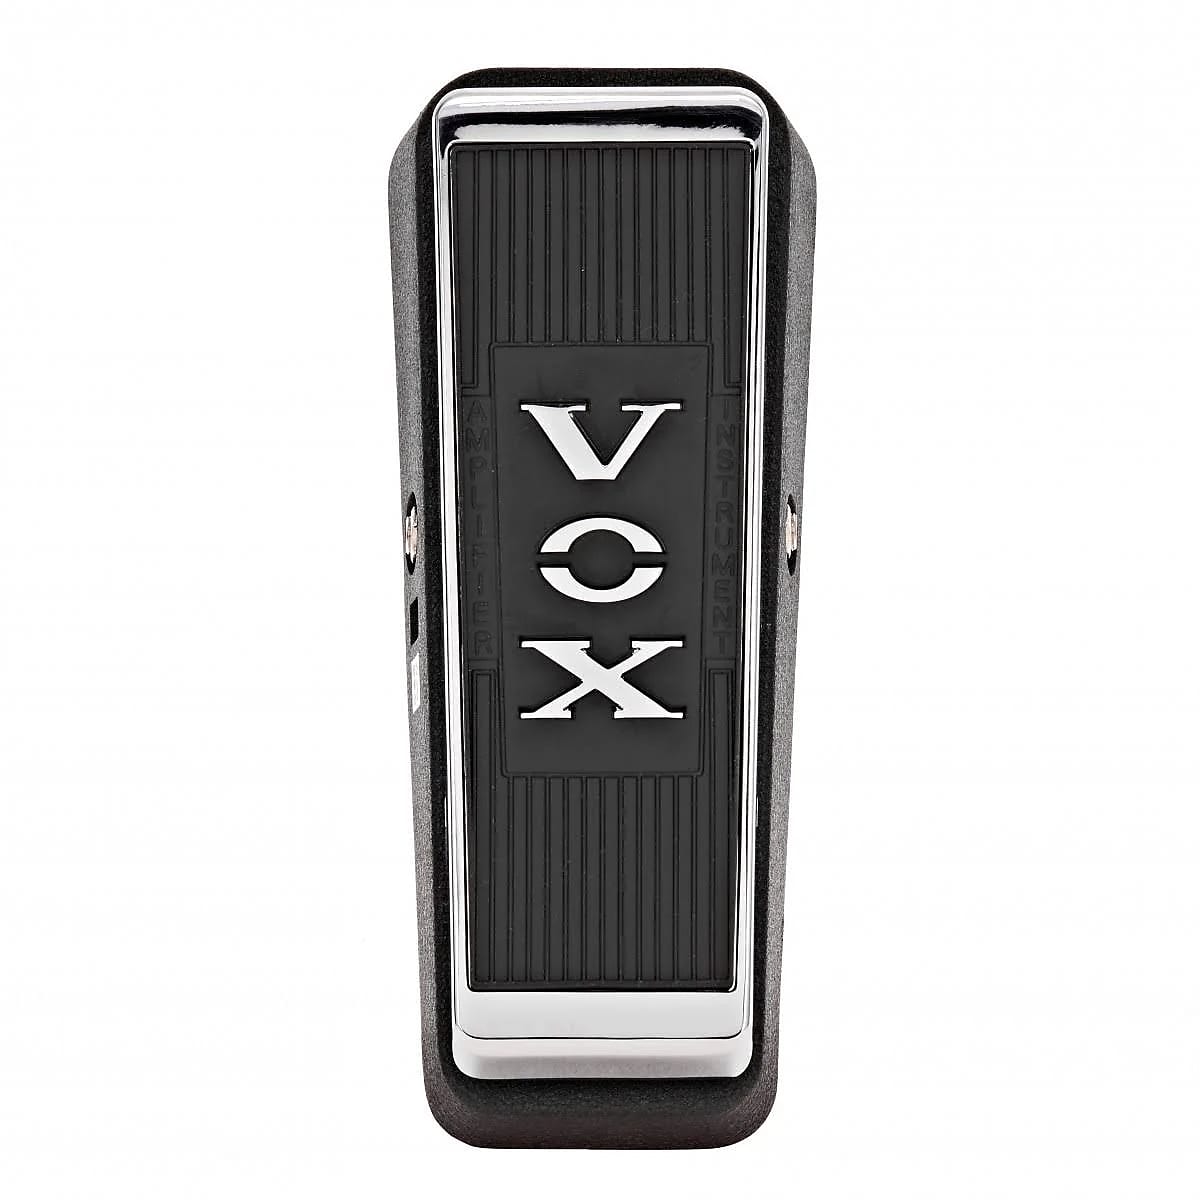 Vox V847A Wah with 9V Jack | Reverb